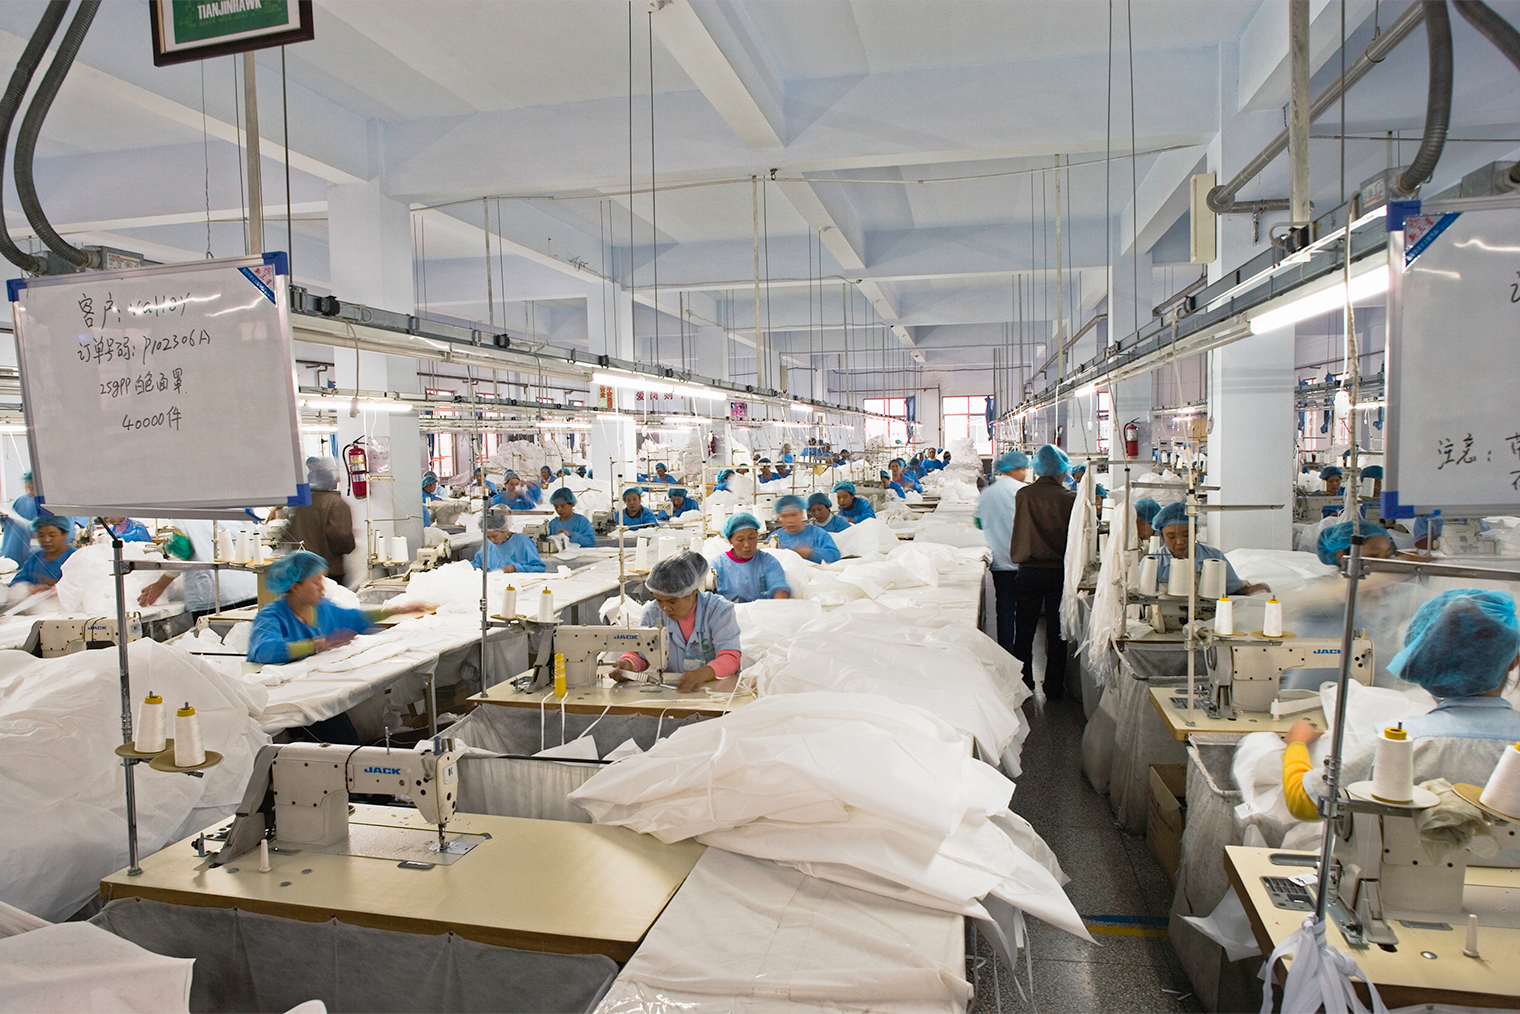 Китайские предприятия могут привлекать много работников и быстро расширяться под нужды заказчика. На текстильном производстве в городе Тяньцзинь шьют защитные костюмы. Фотография: Kim Steele / Getty Images